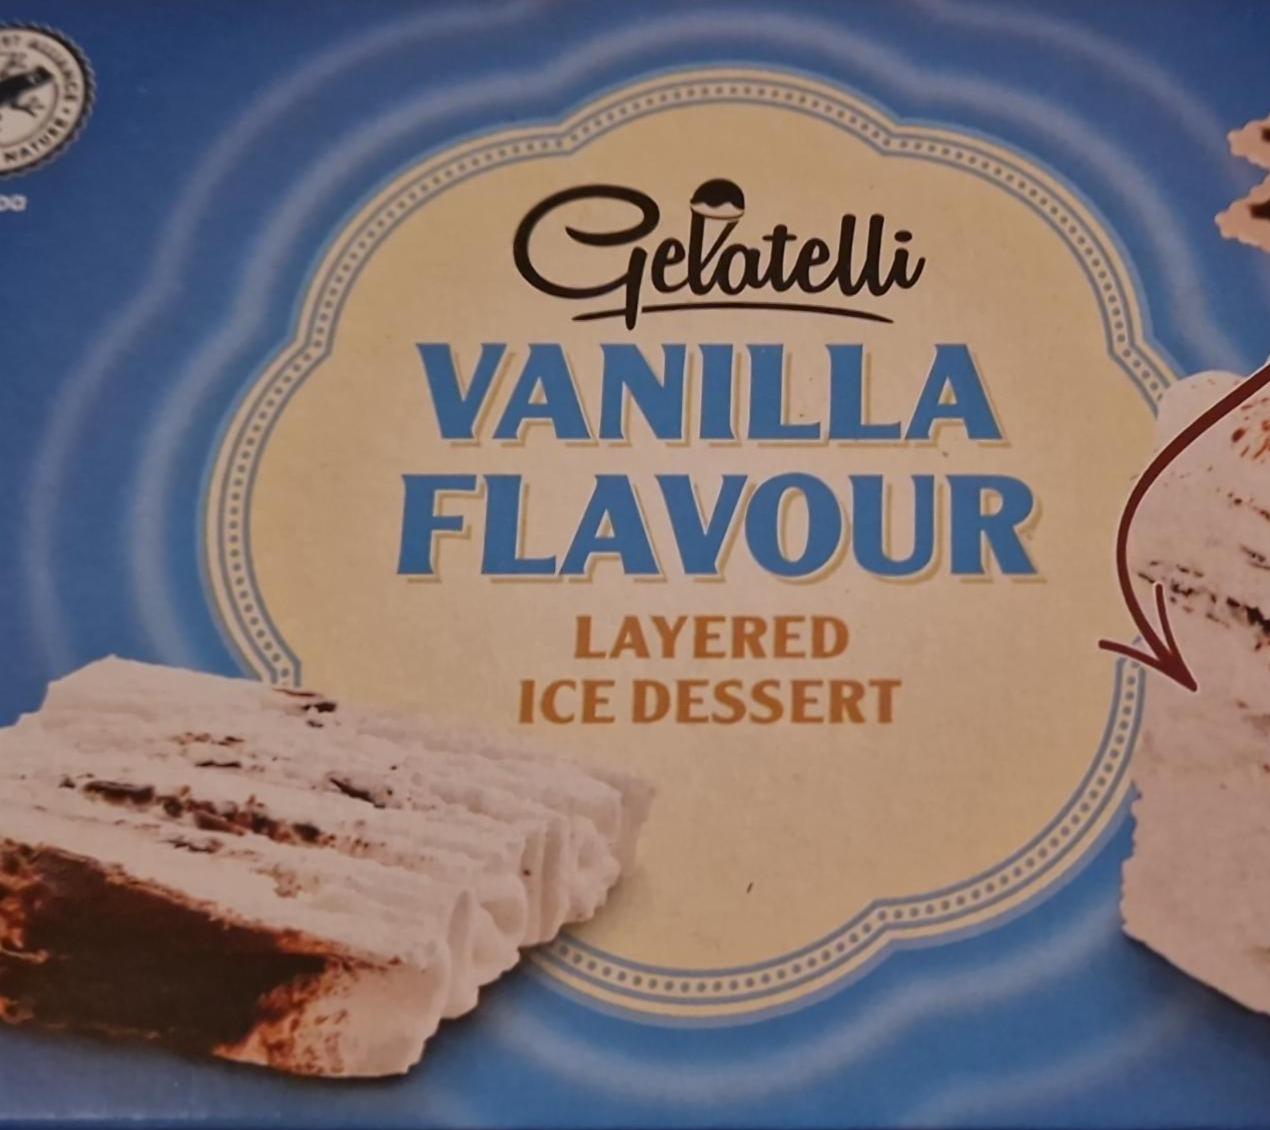 Fotografie - Vanilla flavour layered ice dessert Gelatelli